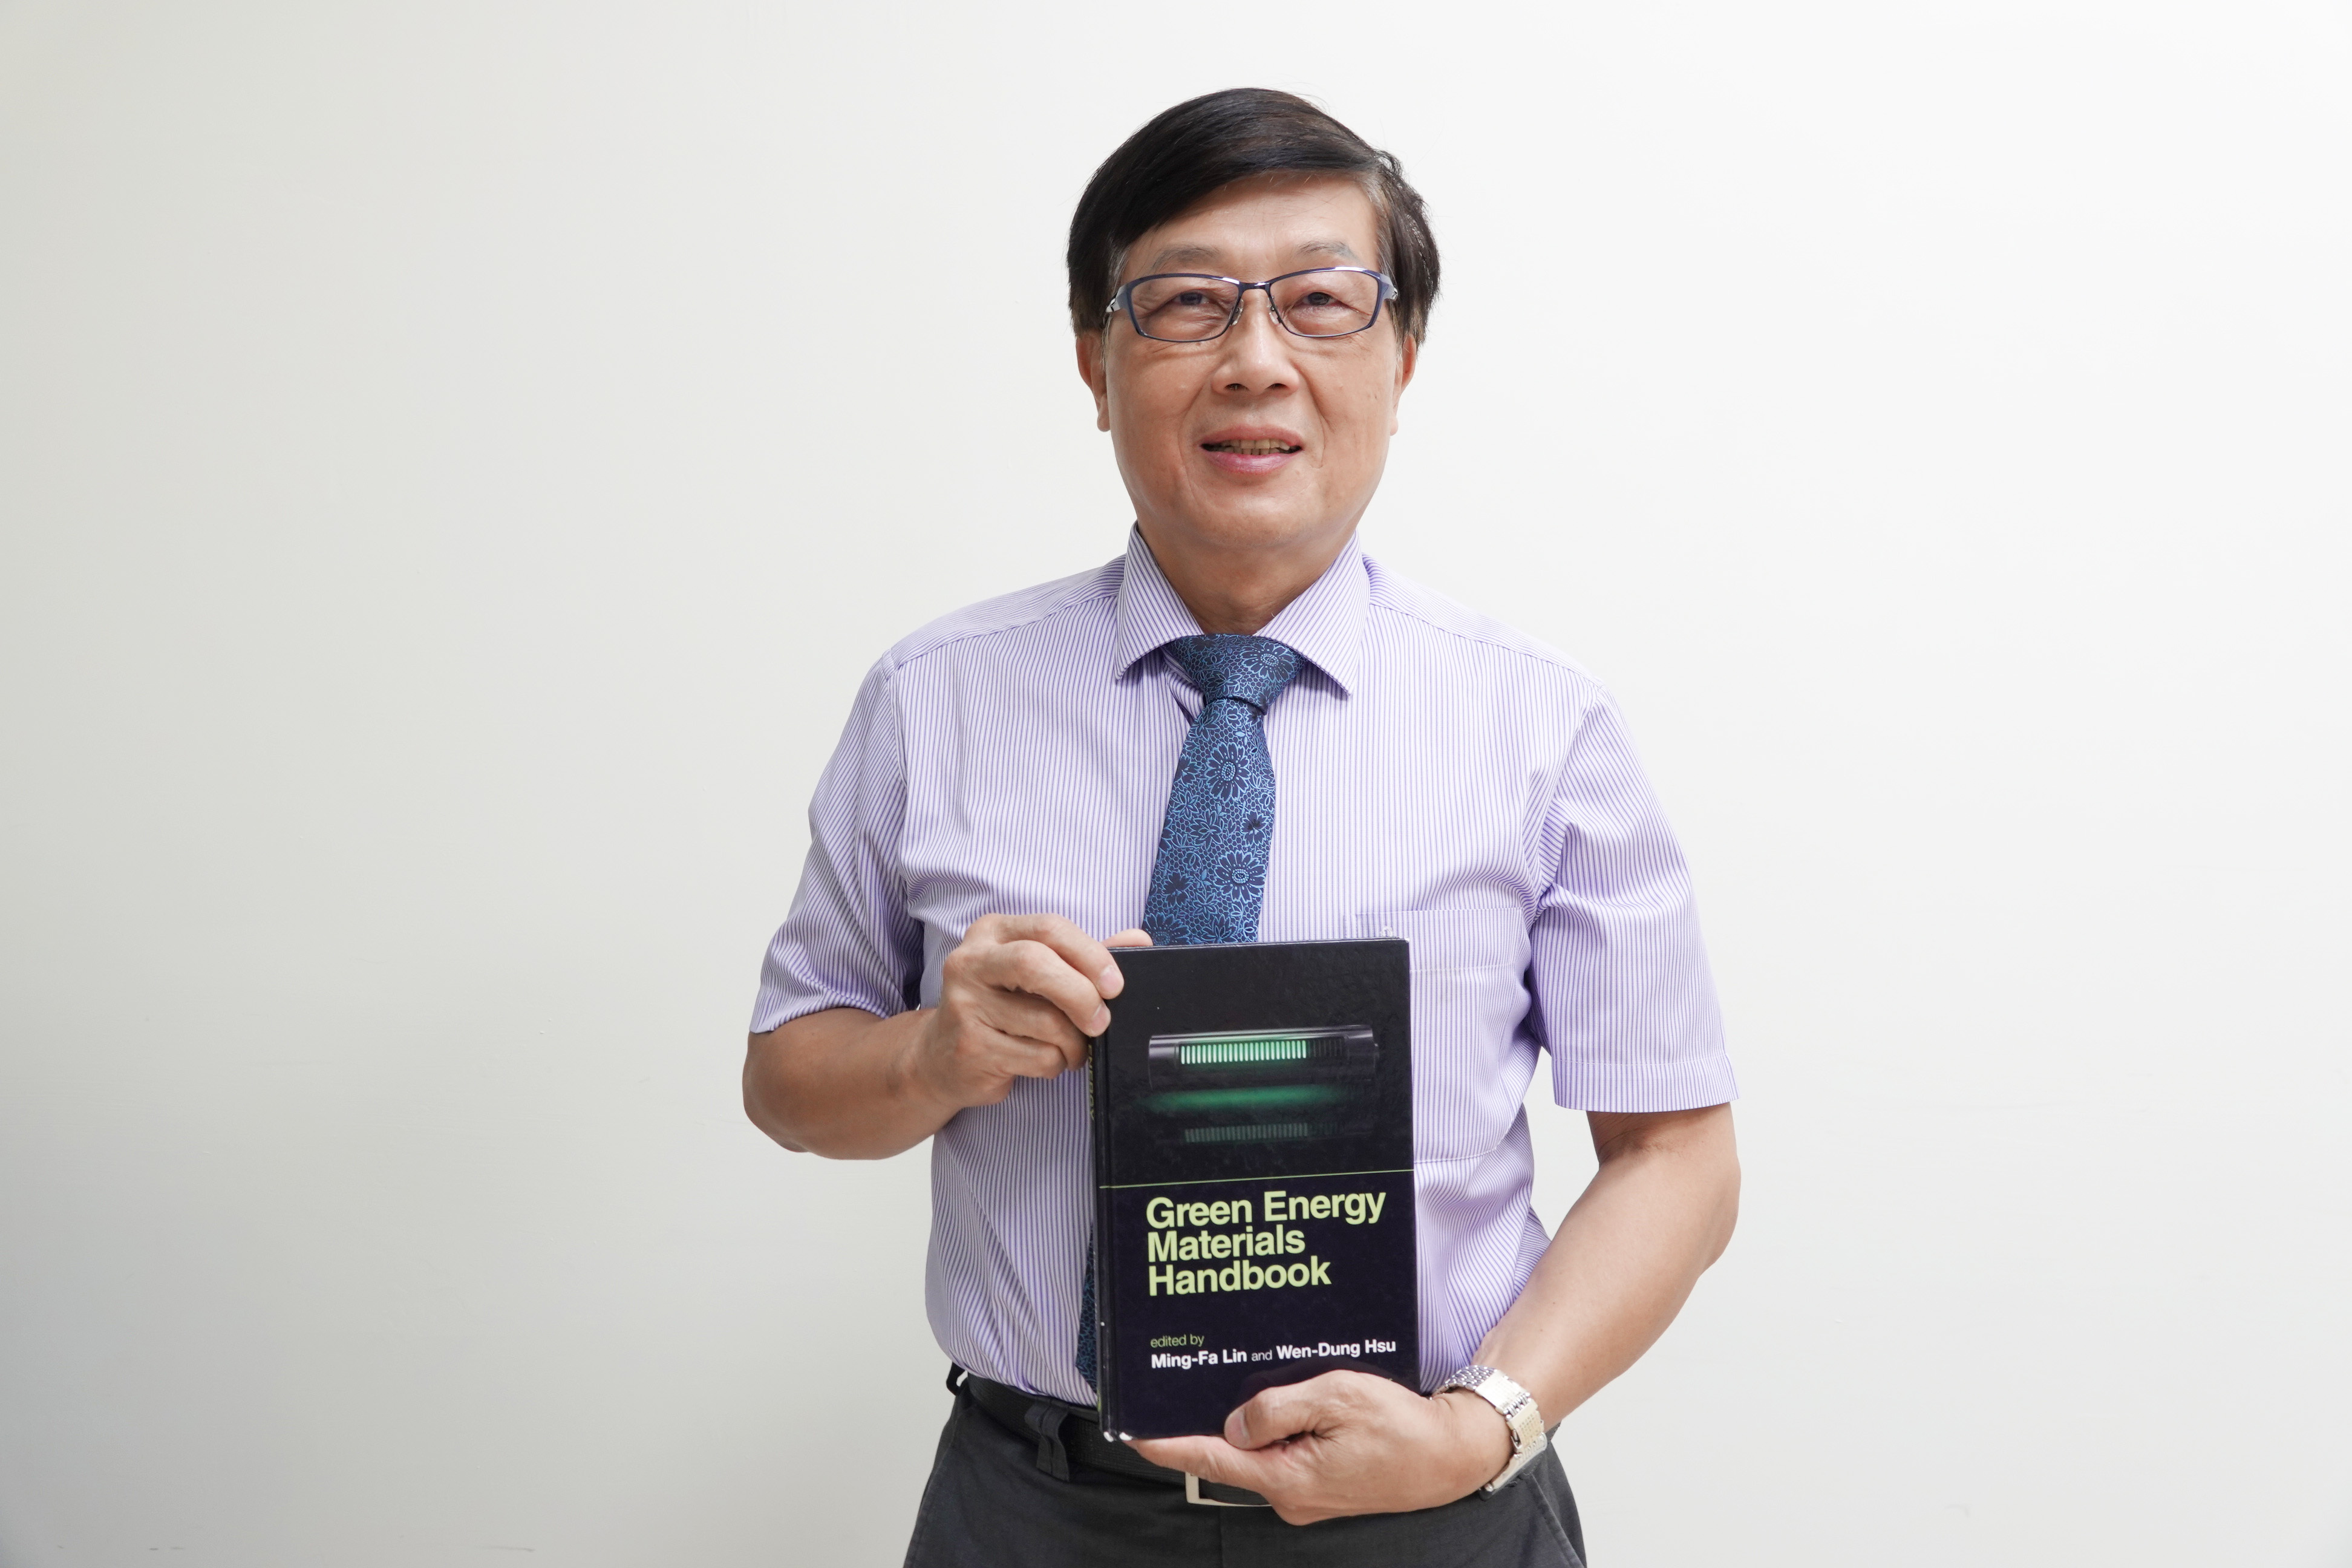 成大跨維綠能材料研究中心主任黃肇瑞帶領中心出版專書